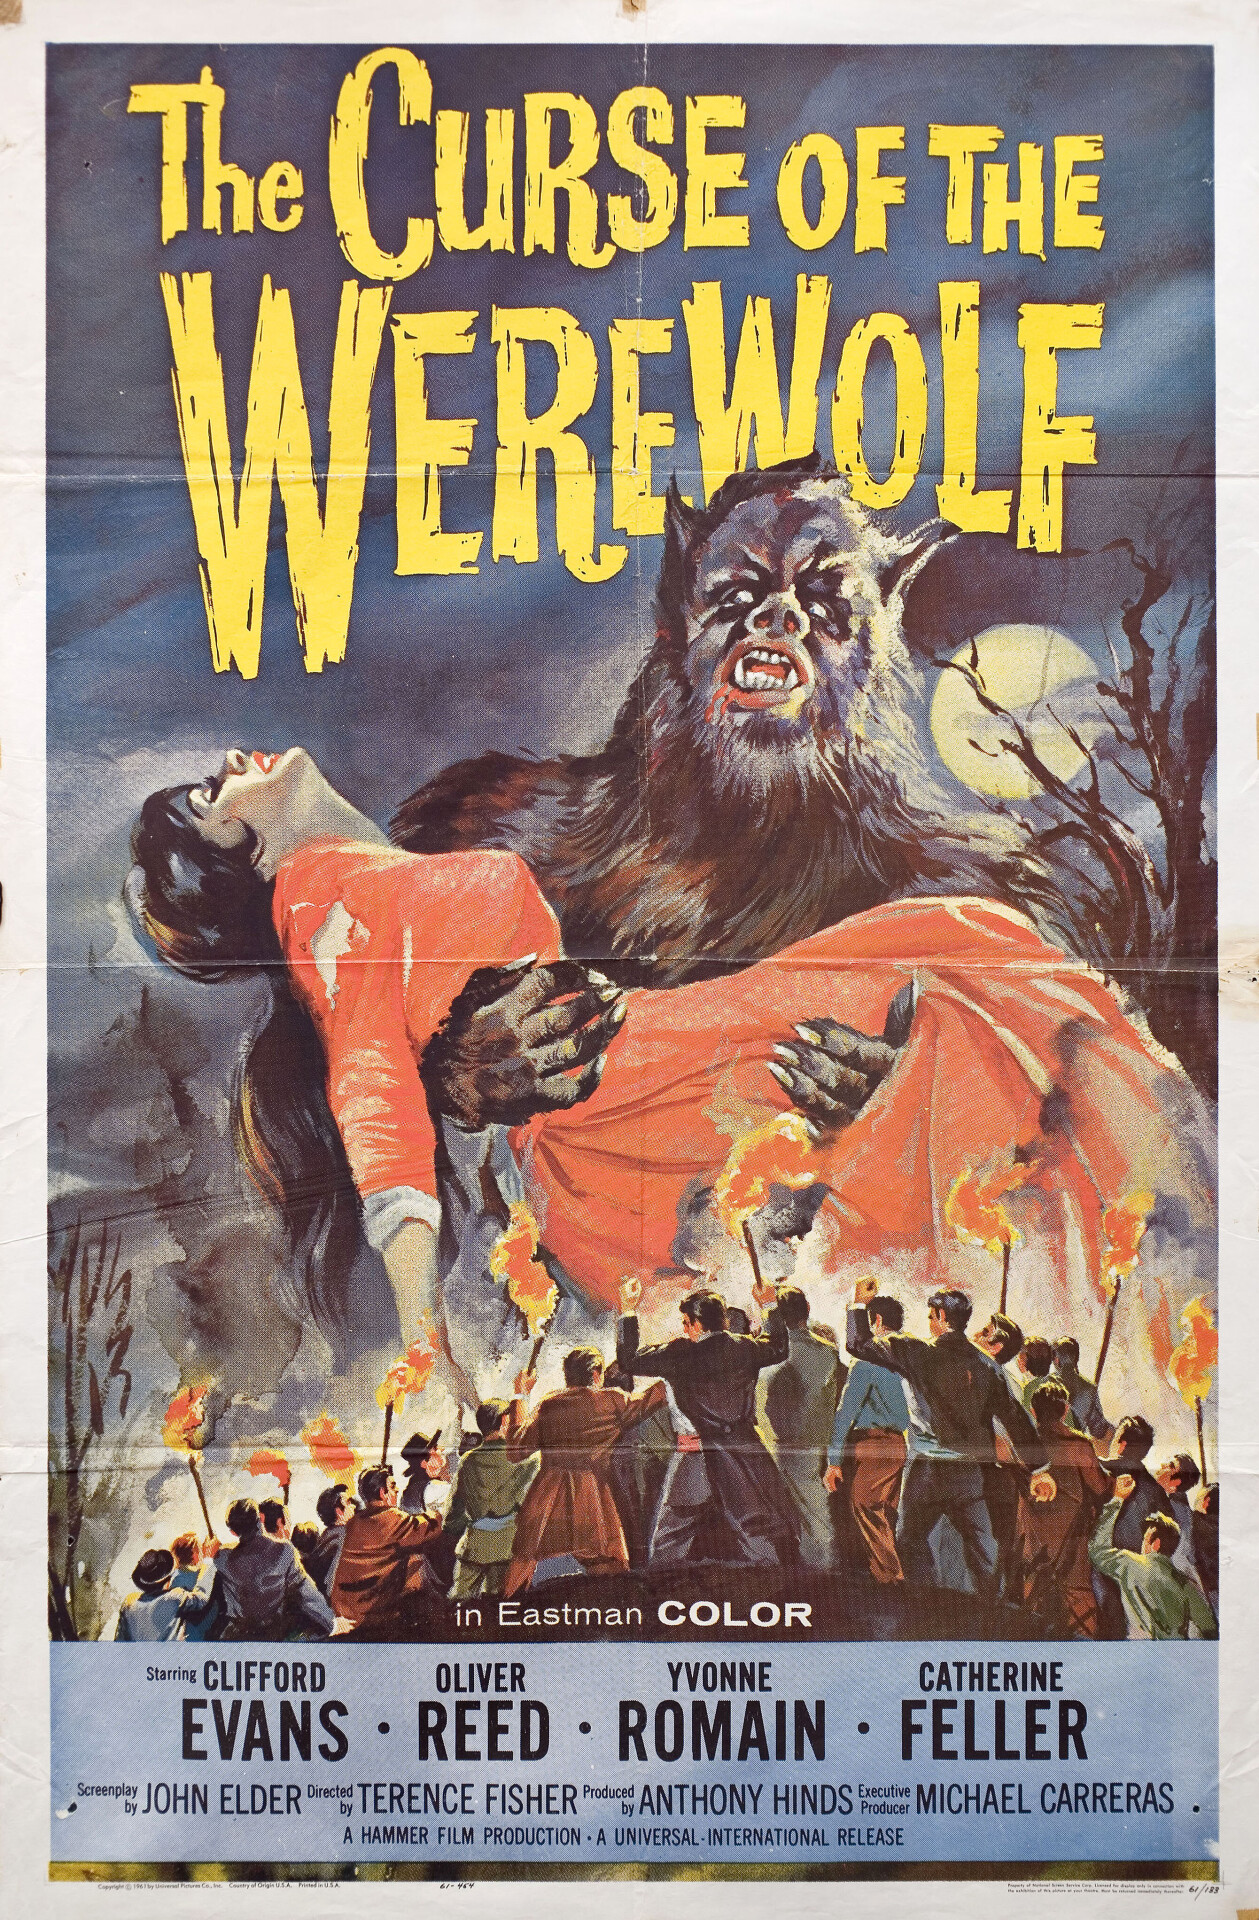 Проклятие оборотня (The Curse of the Werewolf, 1961), режиссёр Теренс Фишер, американский постер к фильму (ужасы, 1961 год)